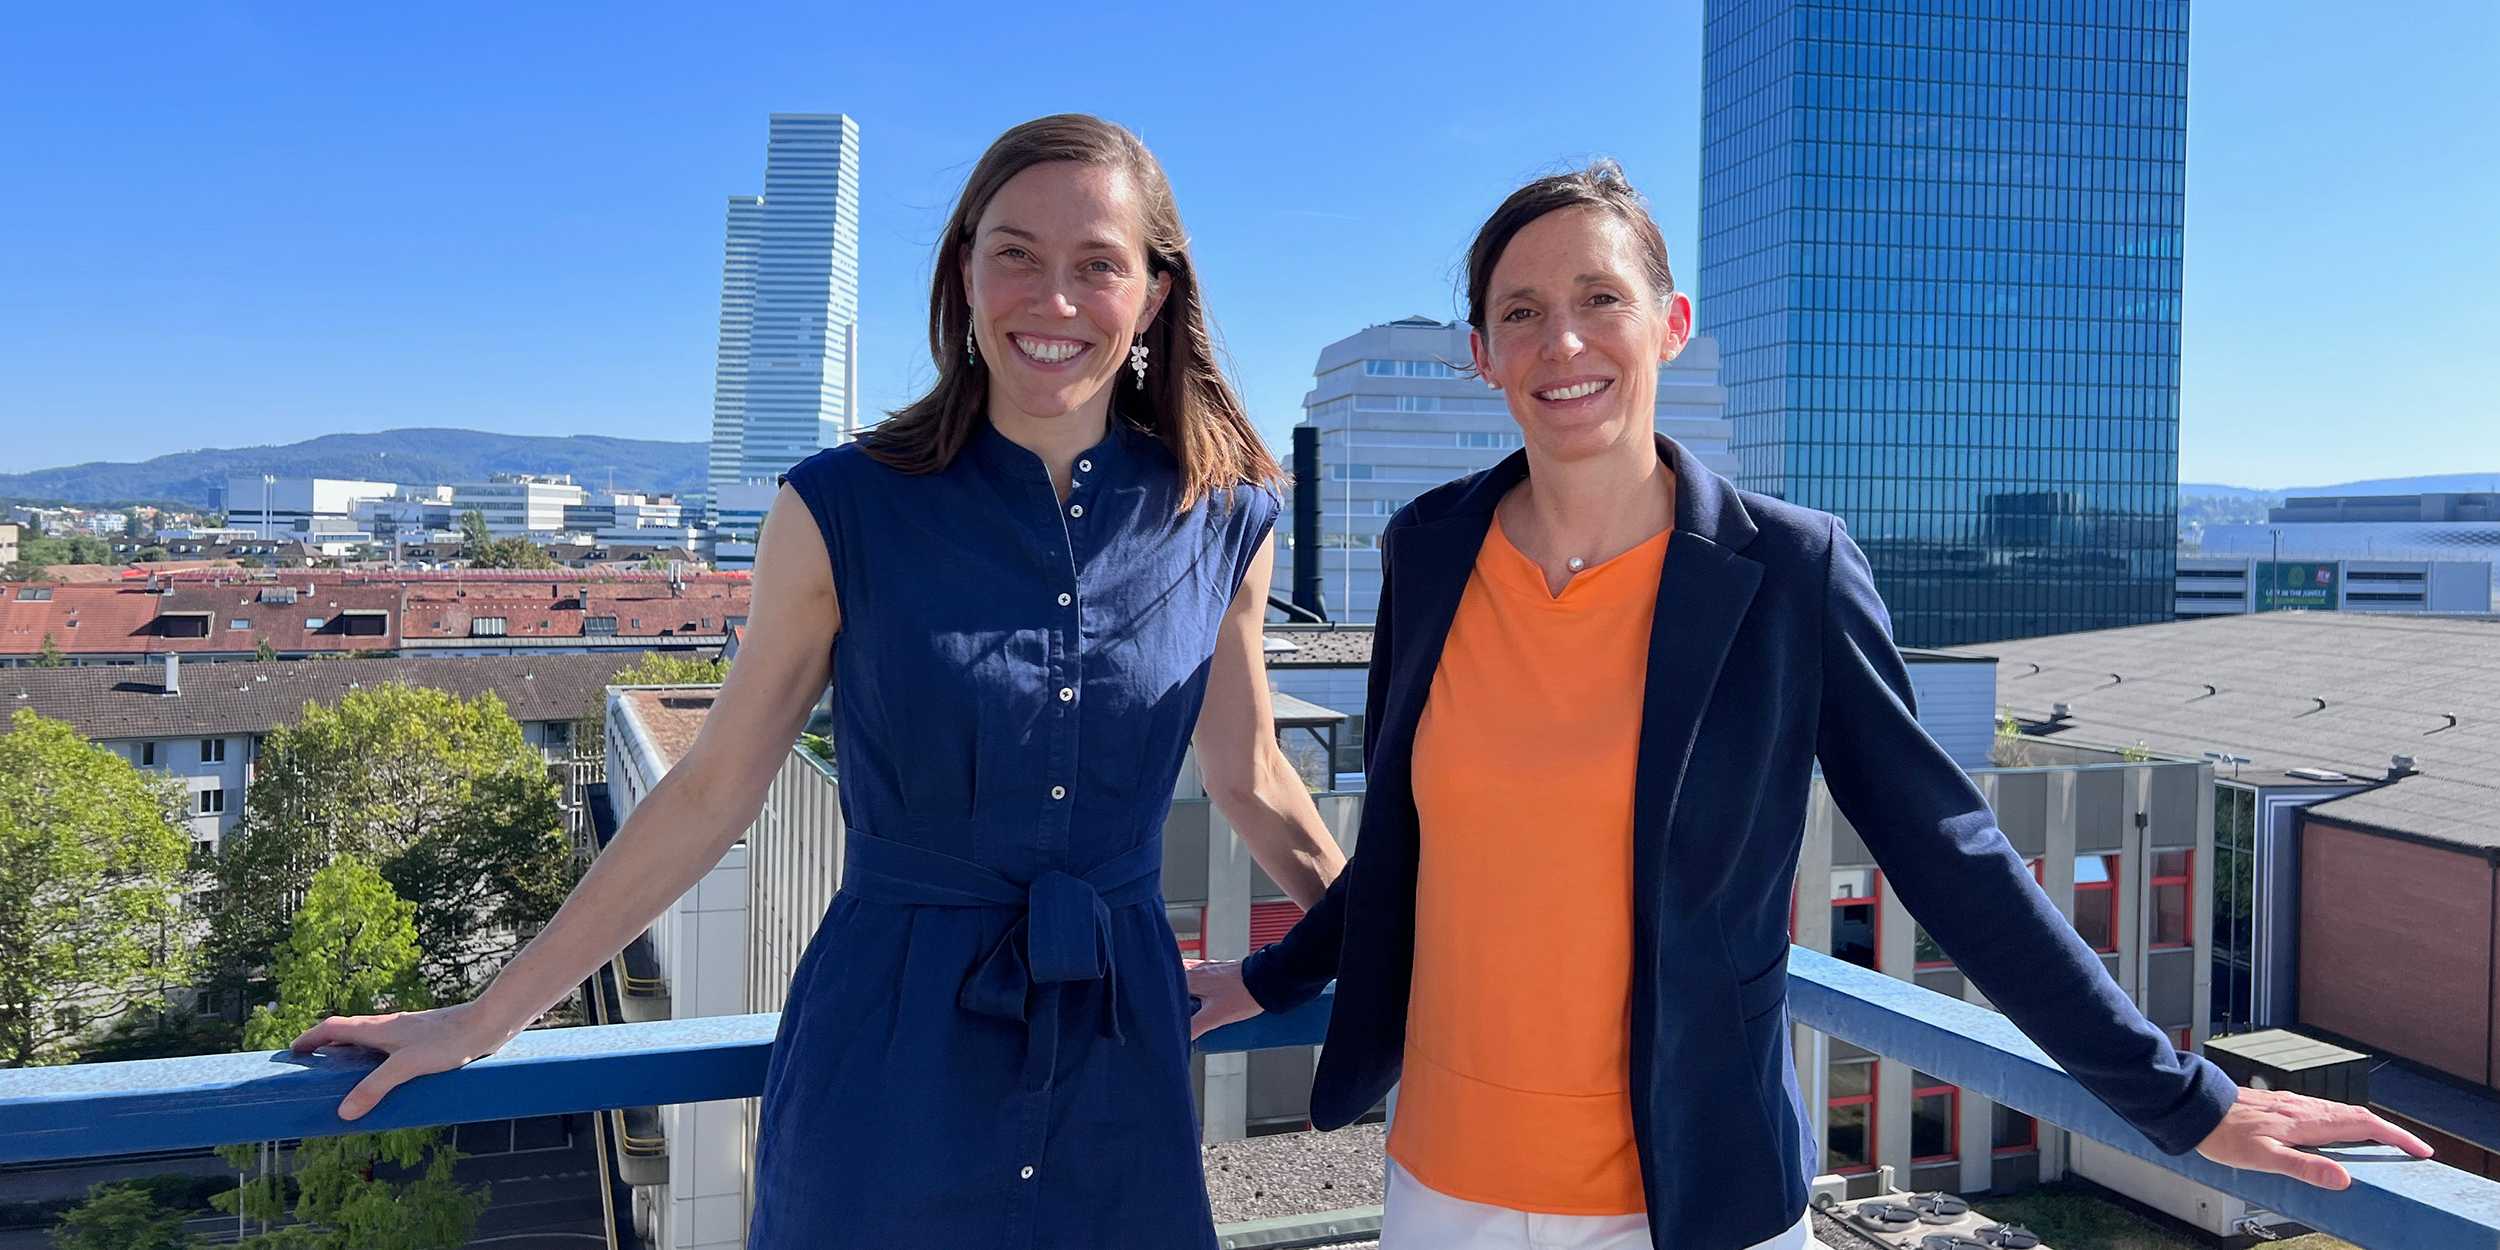 Bild von Barbare Treutlein und Tanja Stadler, die mit einem Lächeln im Gesicht an einem Geländer lehnen. Im Hintergrund sind Gebäude der Stadt Basel zu sehen.